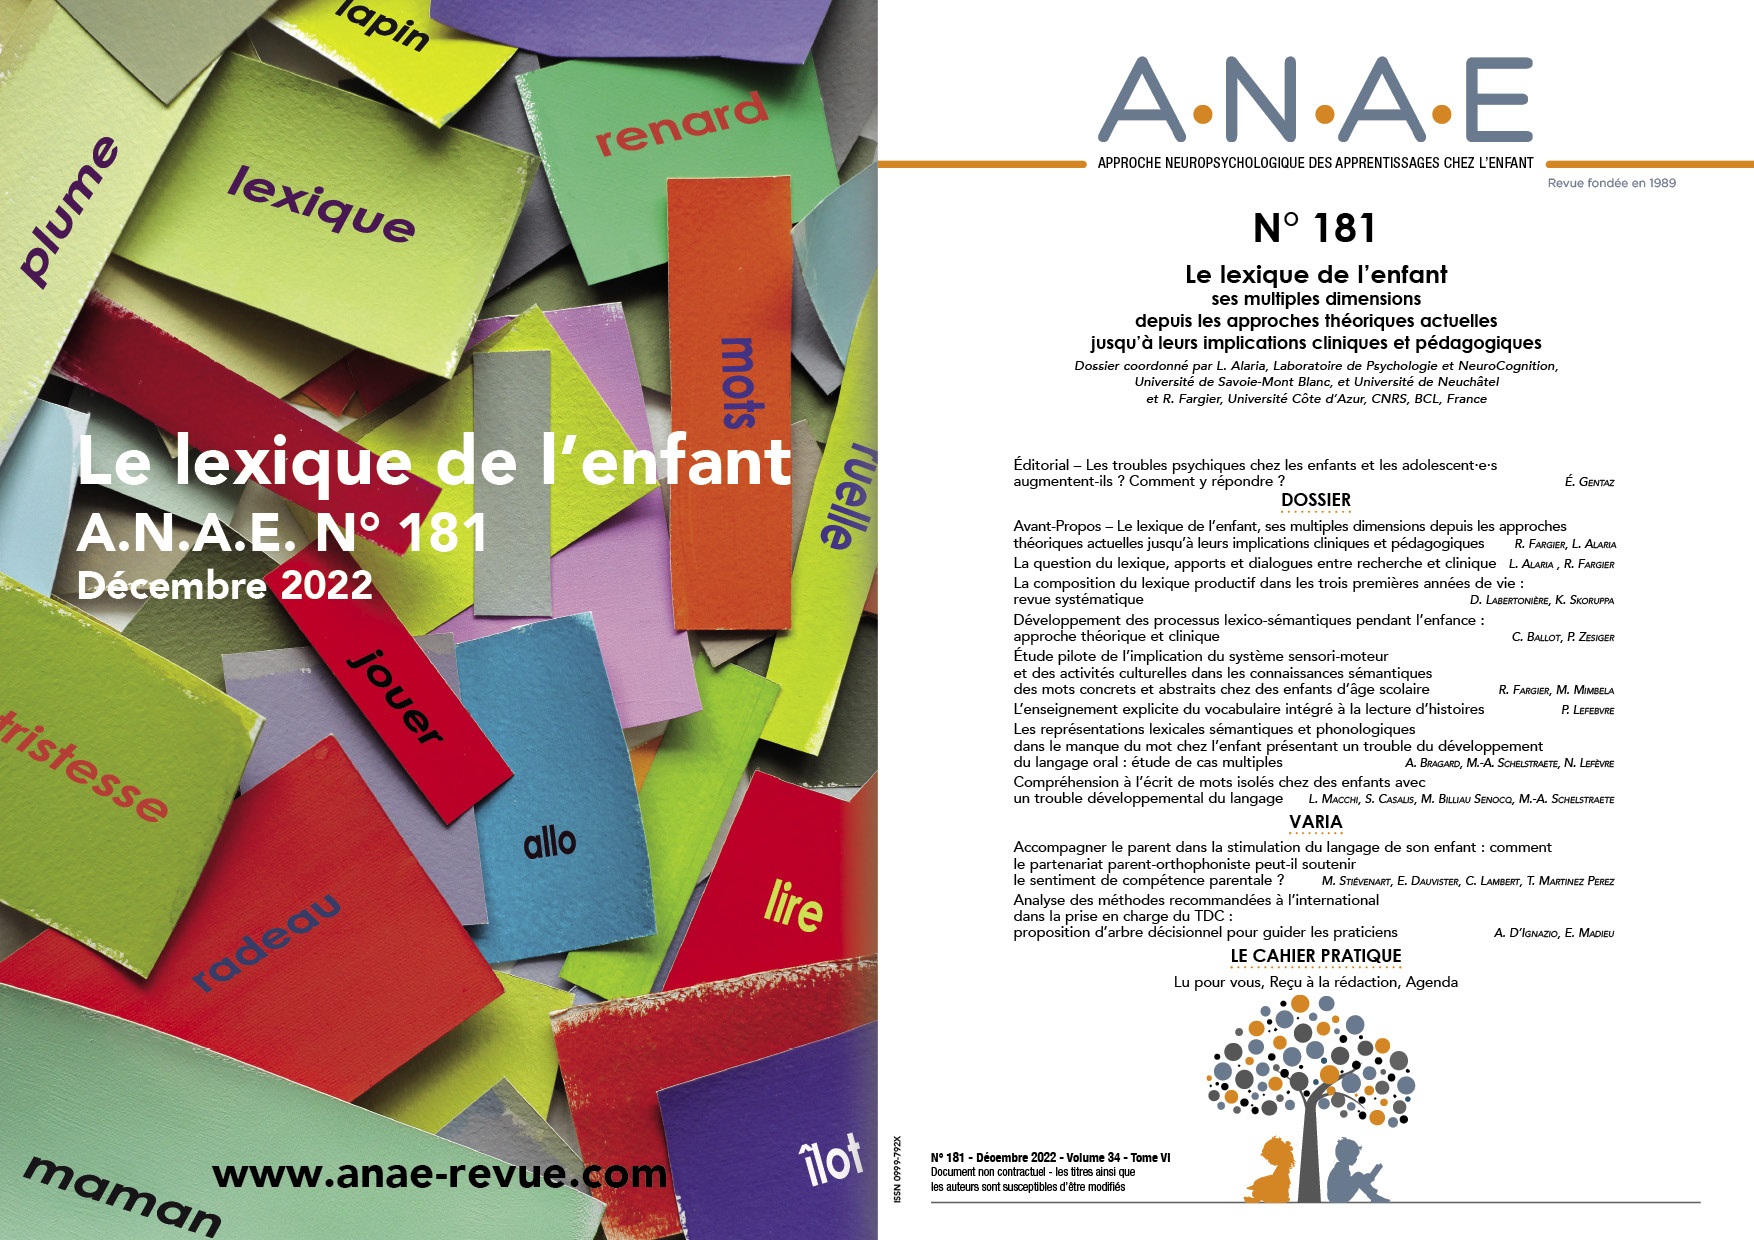 ANAE N° 181 - Le lexique de l'enfant, ses multiples dimensions  - Approches théoriques actuelles et implications cliniques et pédagogiques